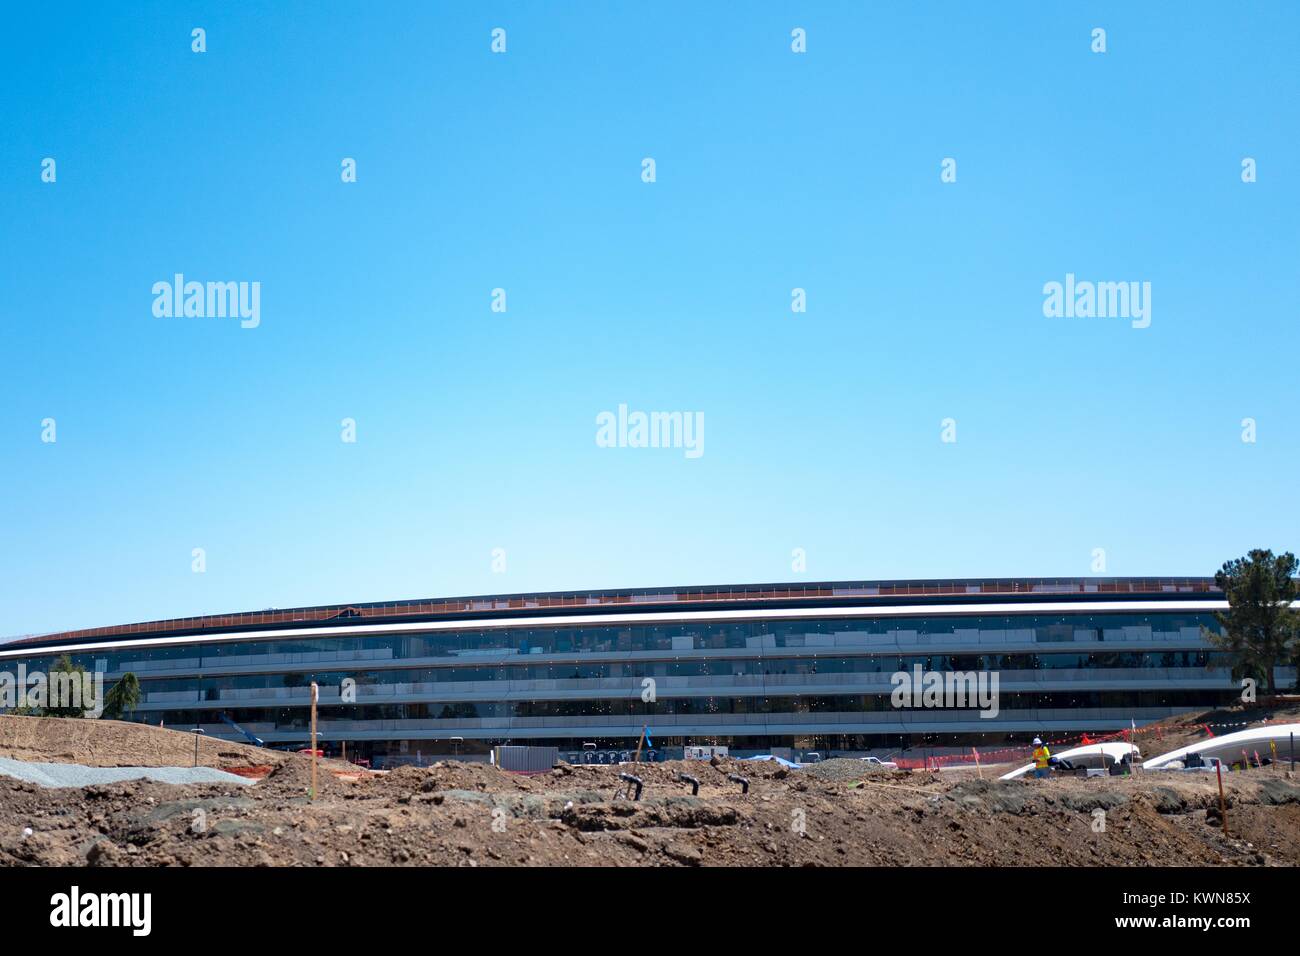 La façade du bâtiment principal est visible au-dessus d'un chantier de construction à l'Apple Park, connu familièrement comme "le vaisseau spatial", le nouveau quartier général d'Apple Inc dans la Silicon Valley ville de Cupertino, Californie, 25 juillet 2017. Banque D'Images